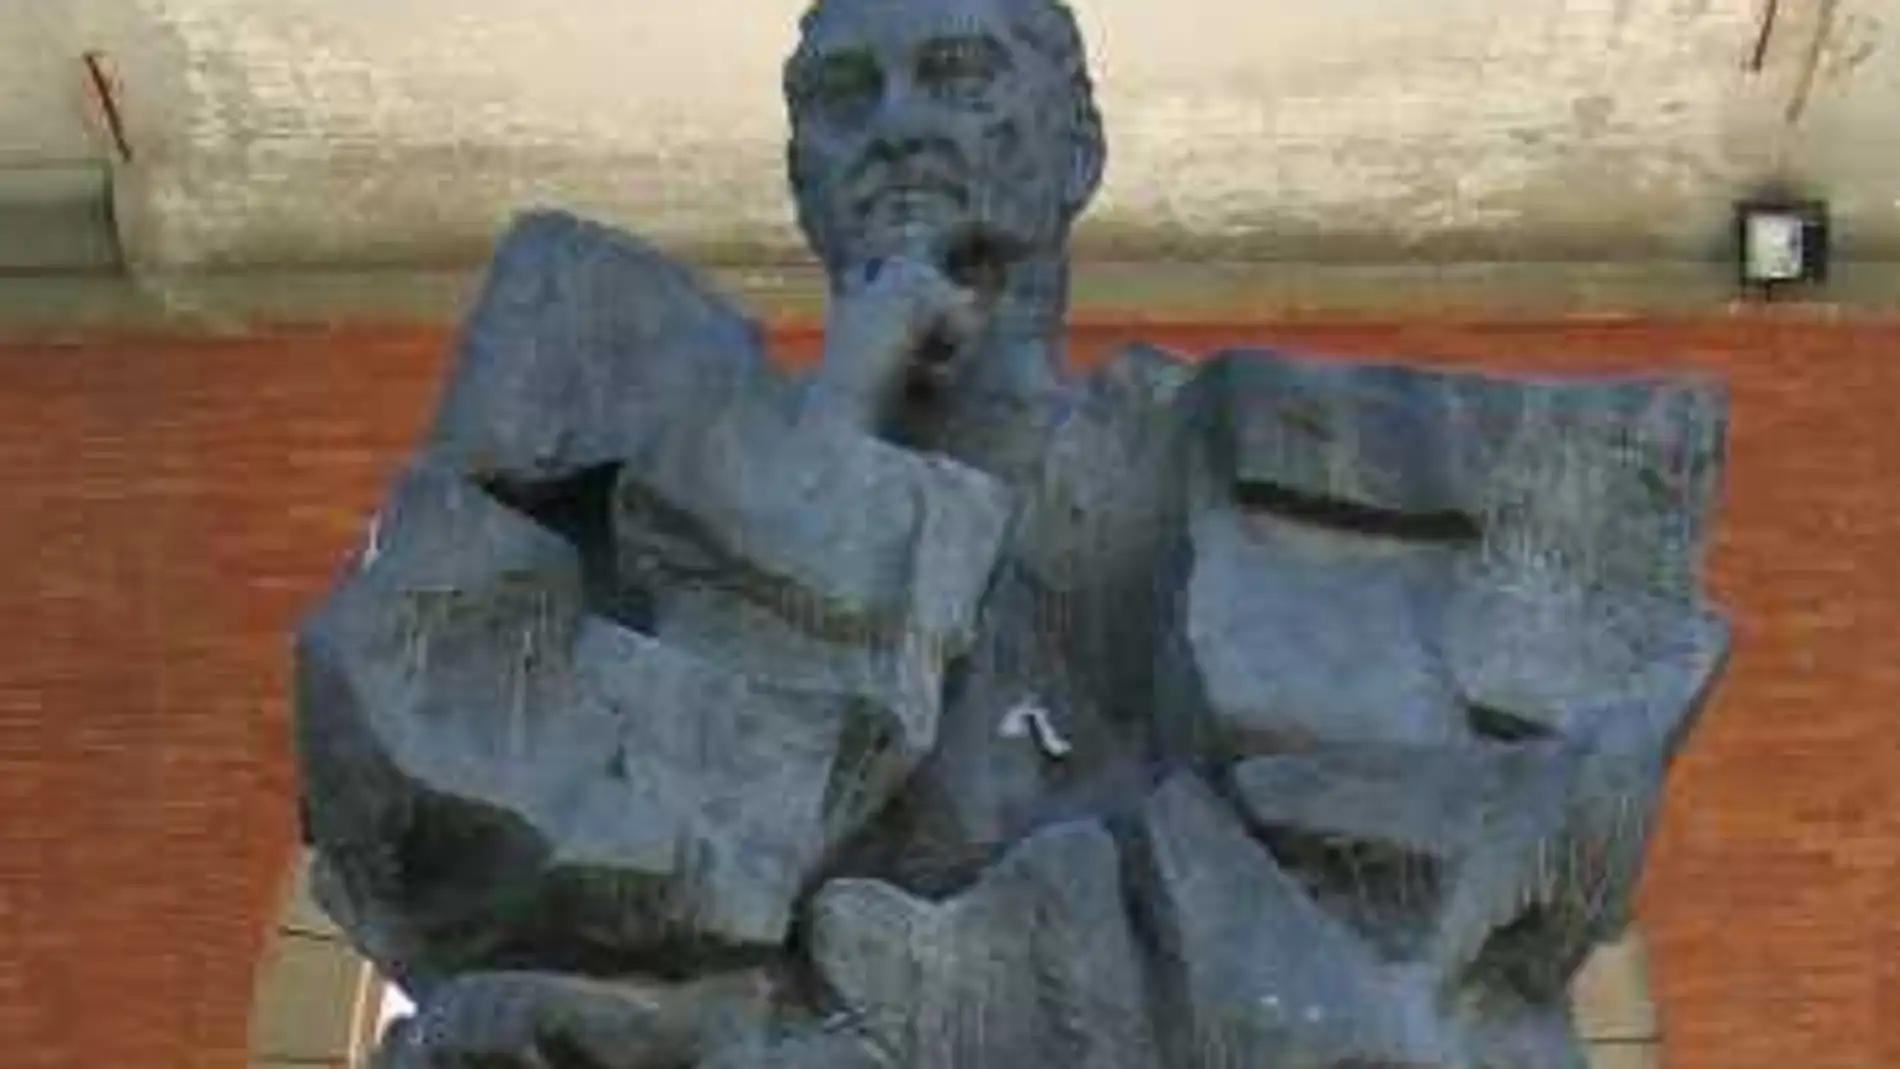 La estatua de bronce de Largo Caballero, instalada en Nuevos Ministerios desde hace 35 años